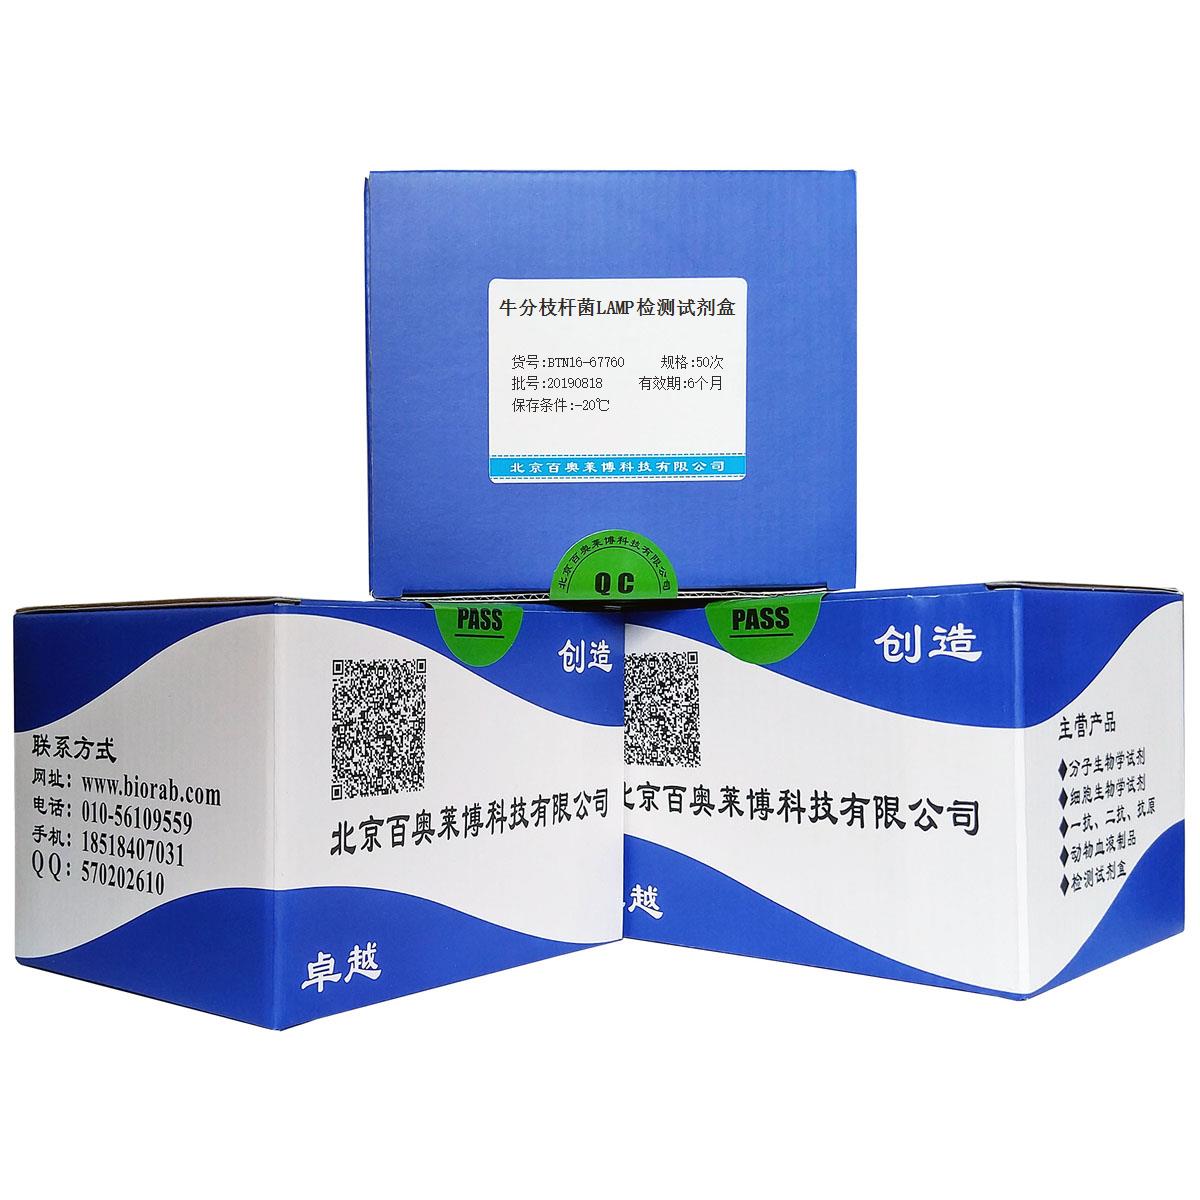 牛分枝杆菌LAMP检测试剂盒北京供应商